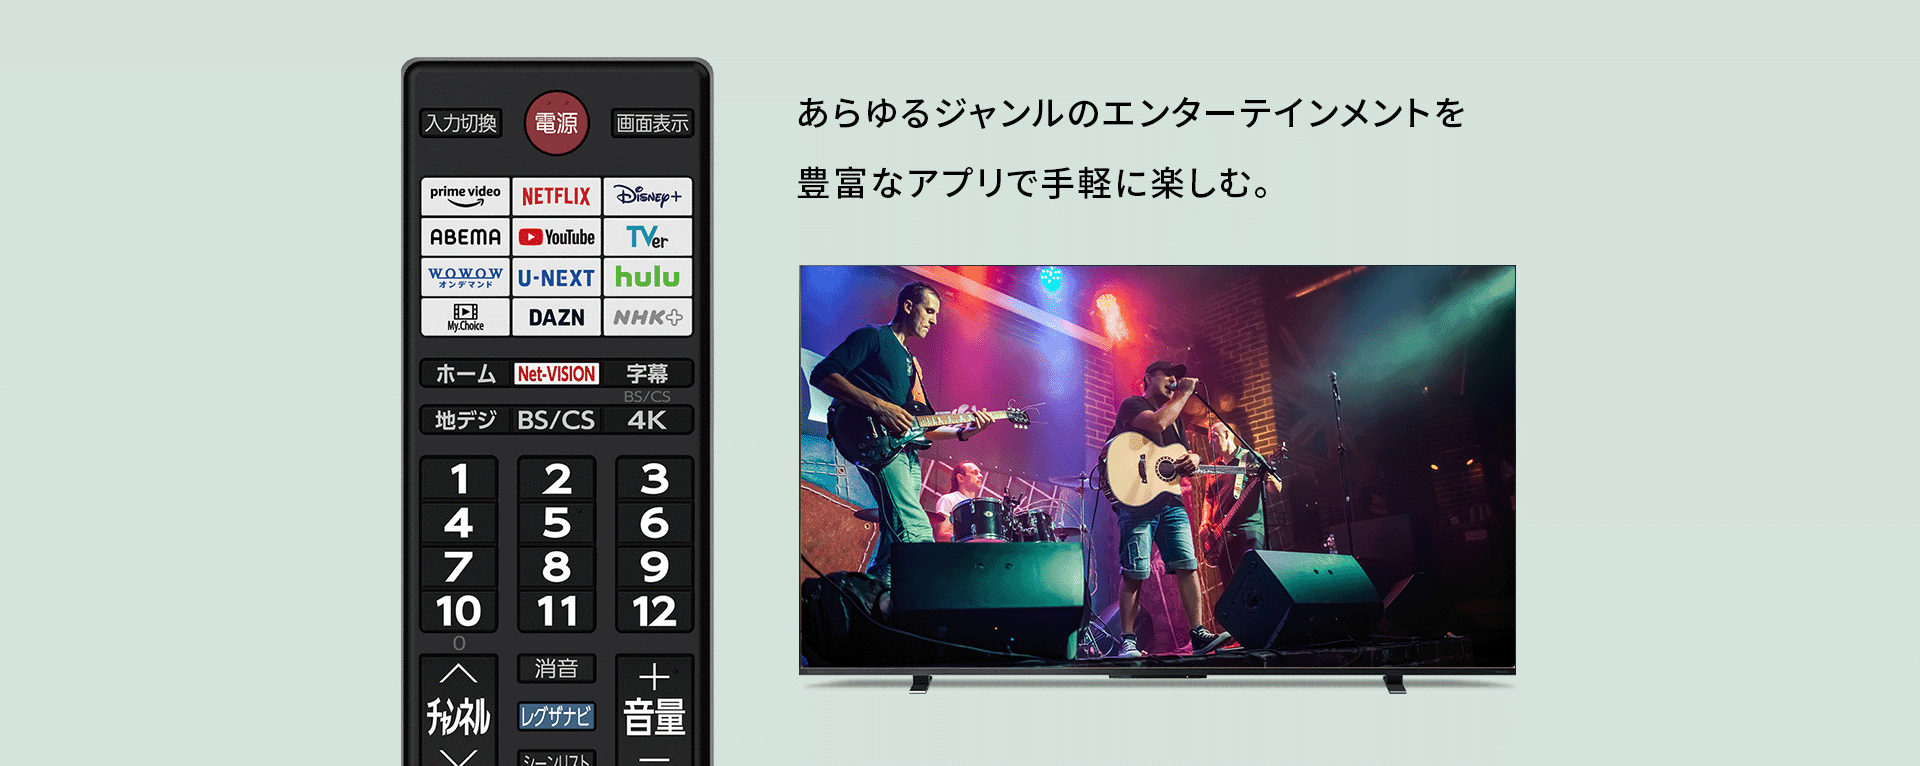 9,250円即日受渡❣️送料込Panasonic32型液晶 TV  HDMIx2.USB端子